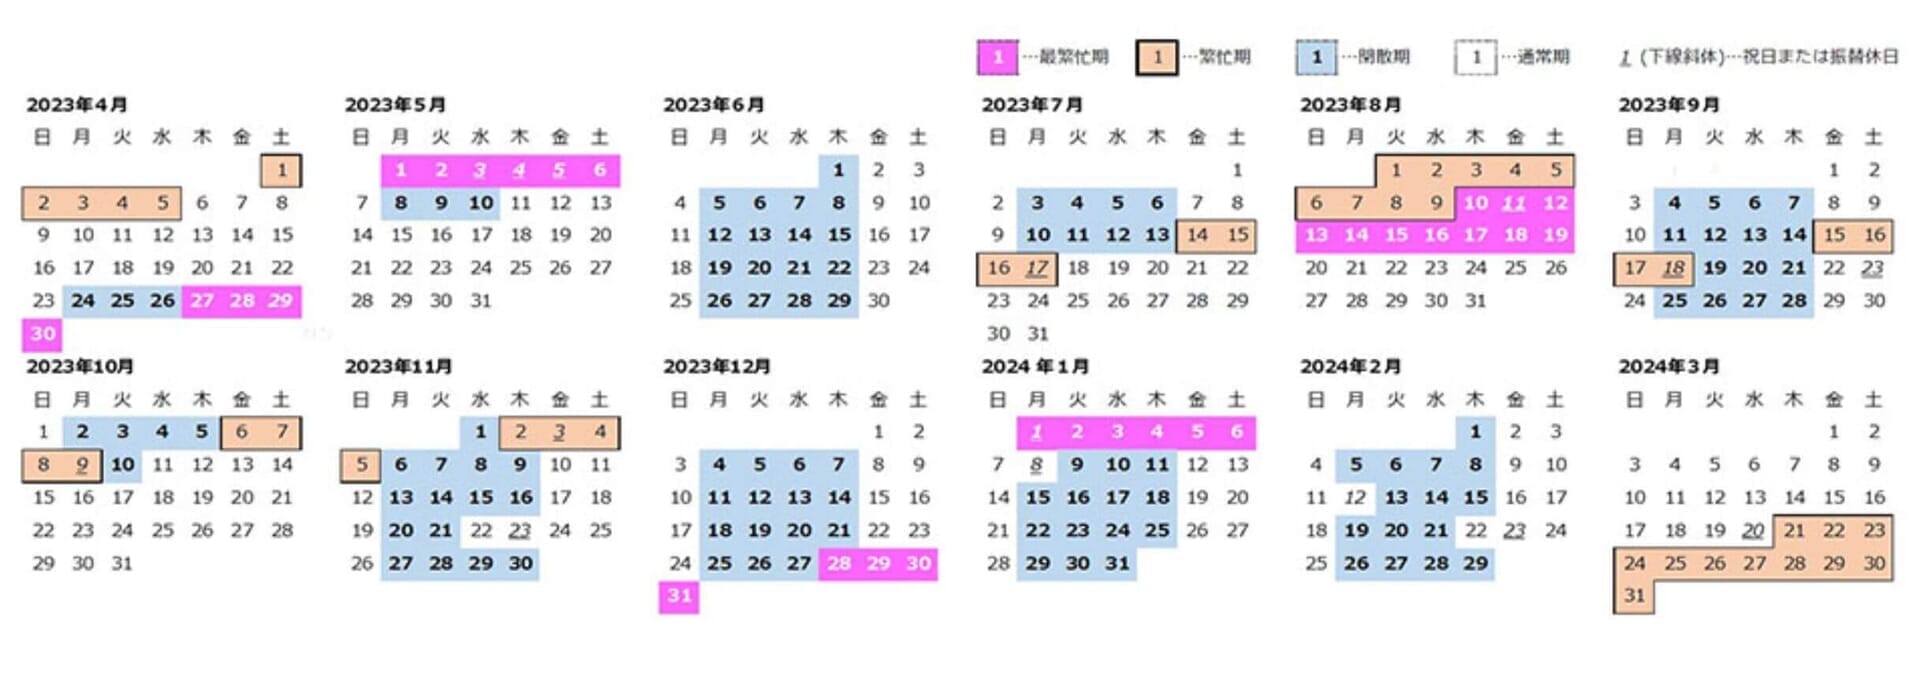 えきねっとトクだ値の繁忙期カレンダー 引用元：JR東日本公式サイトhttps://www.jreast.co.jp/kippu/1202.html#02